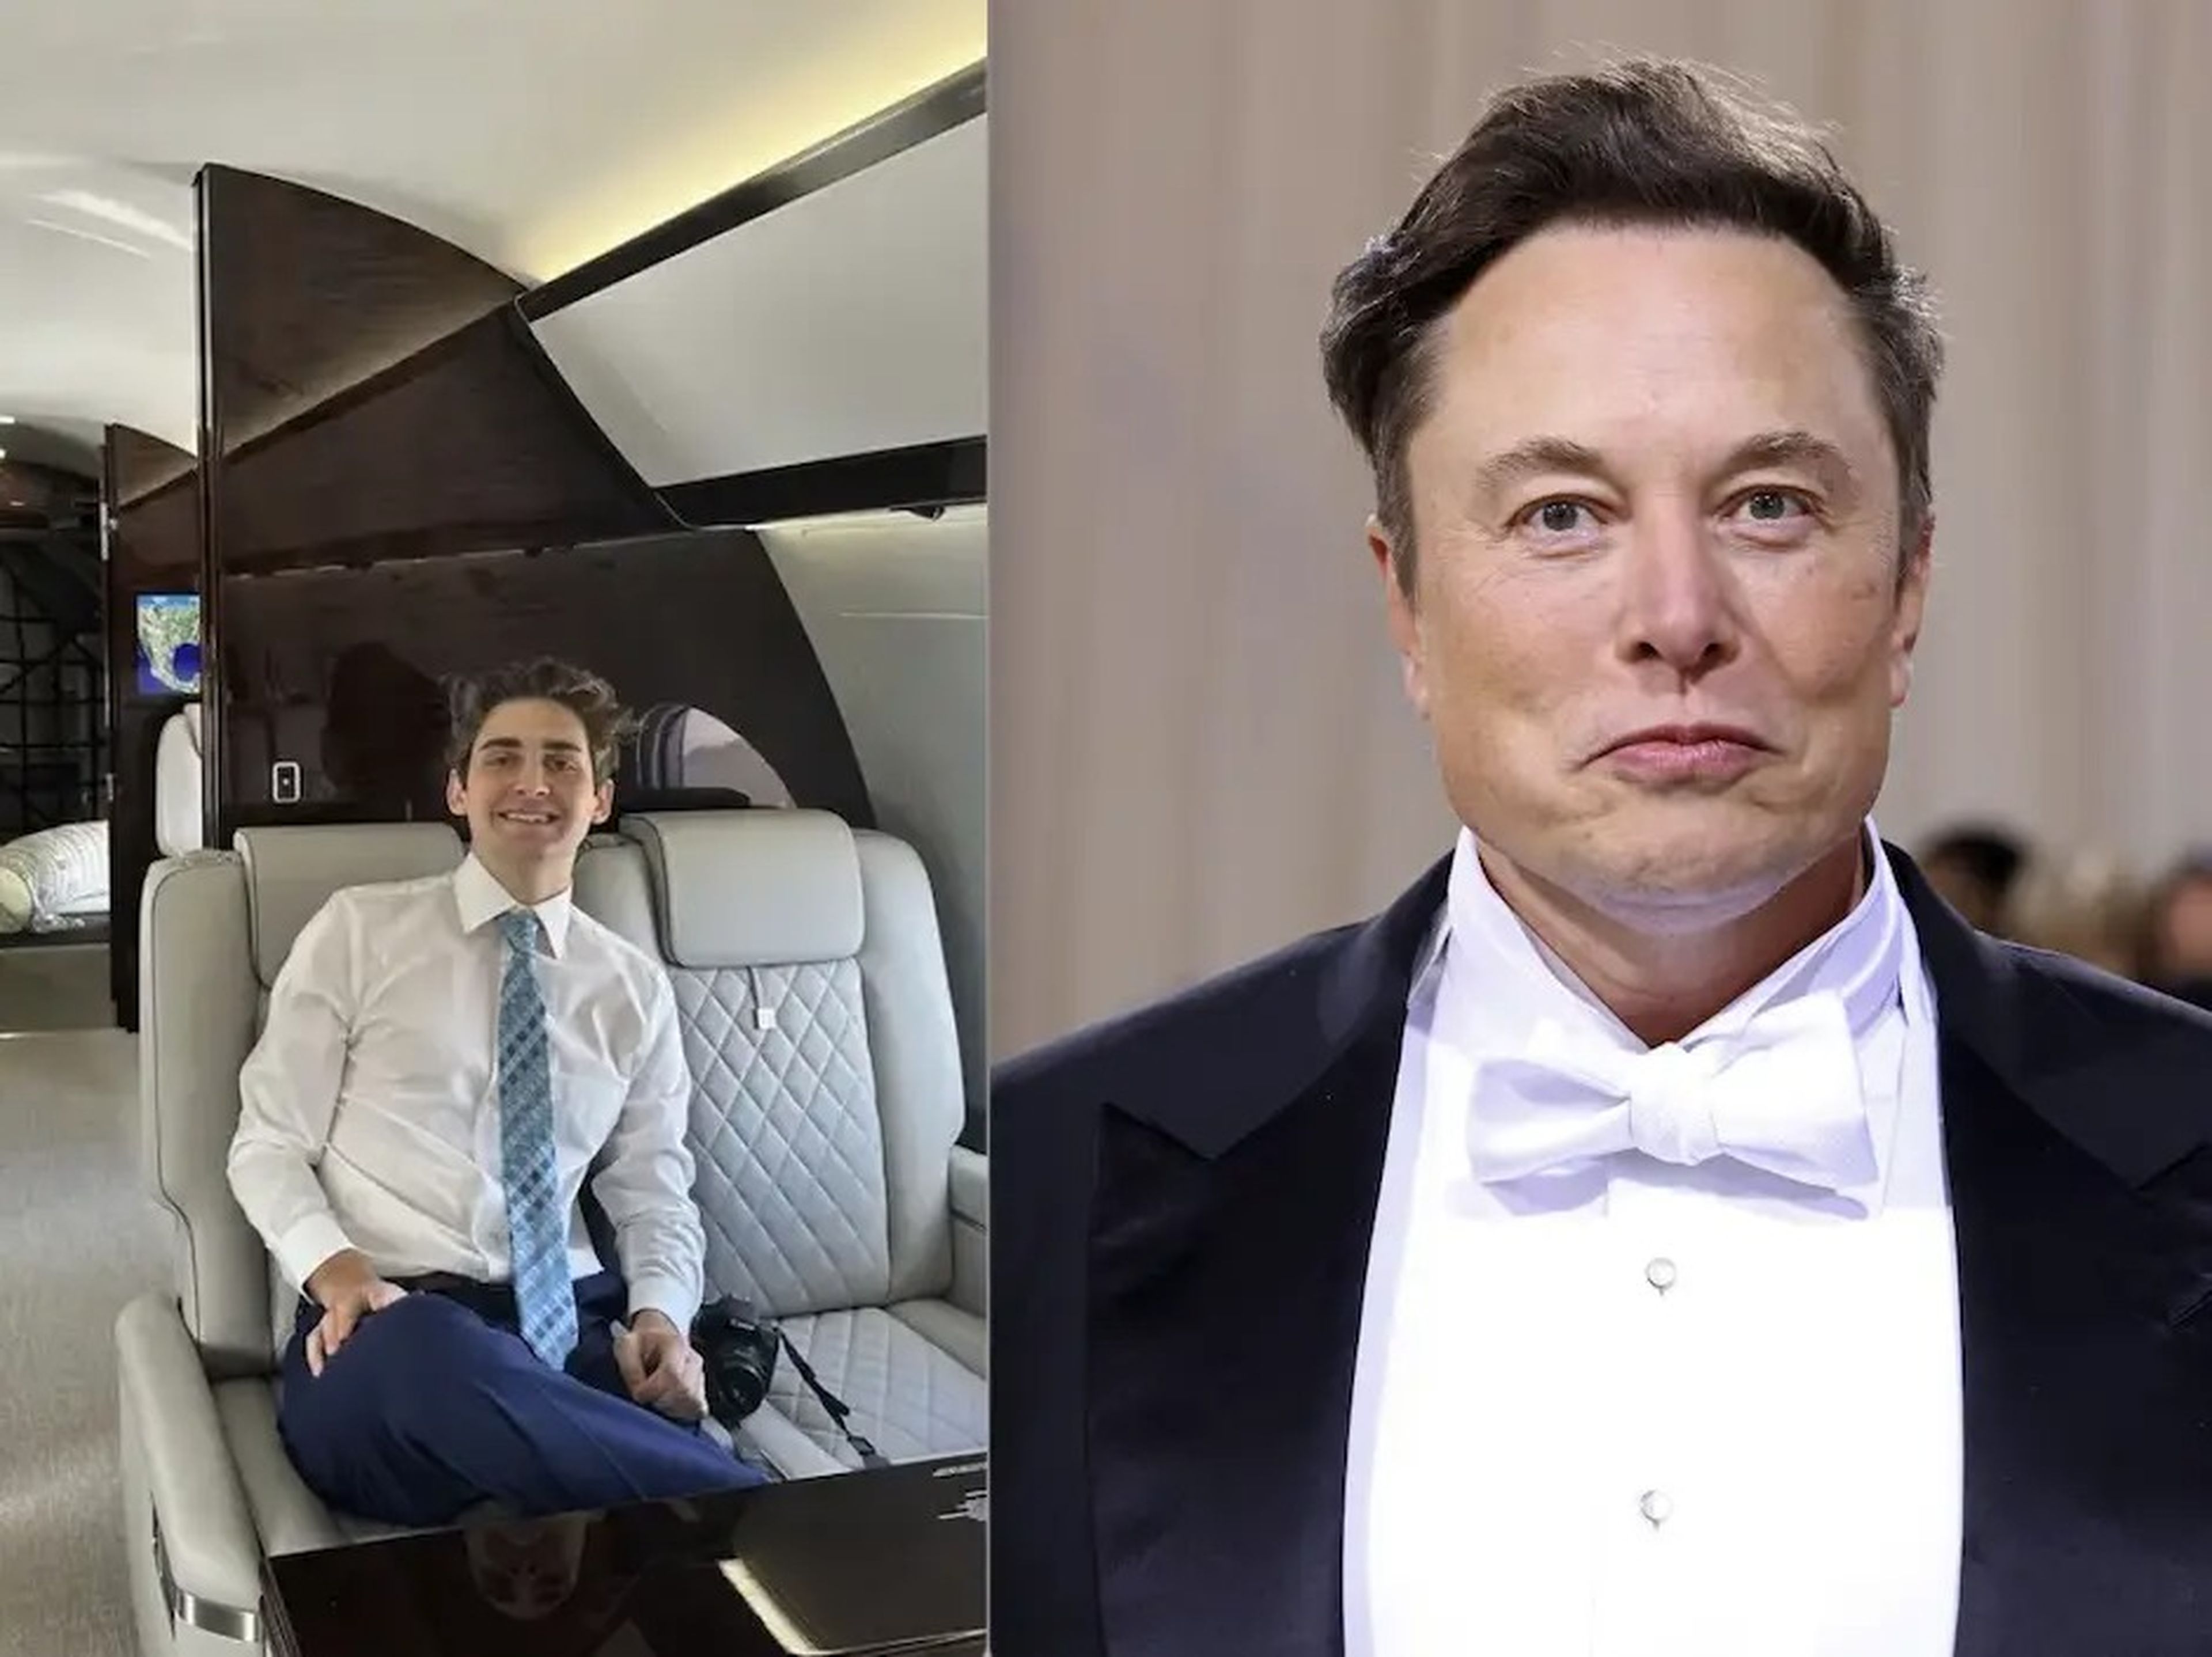 Jack Sweeney and Elon Musk